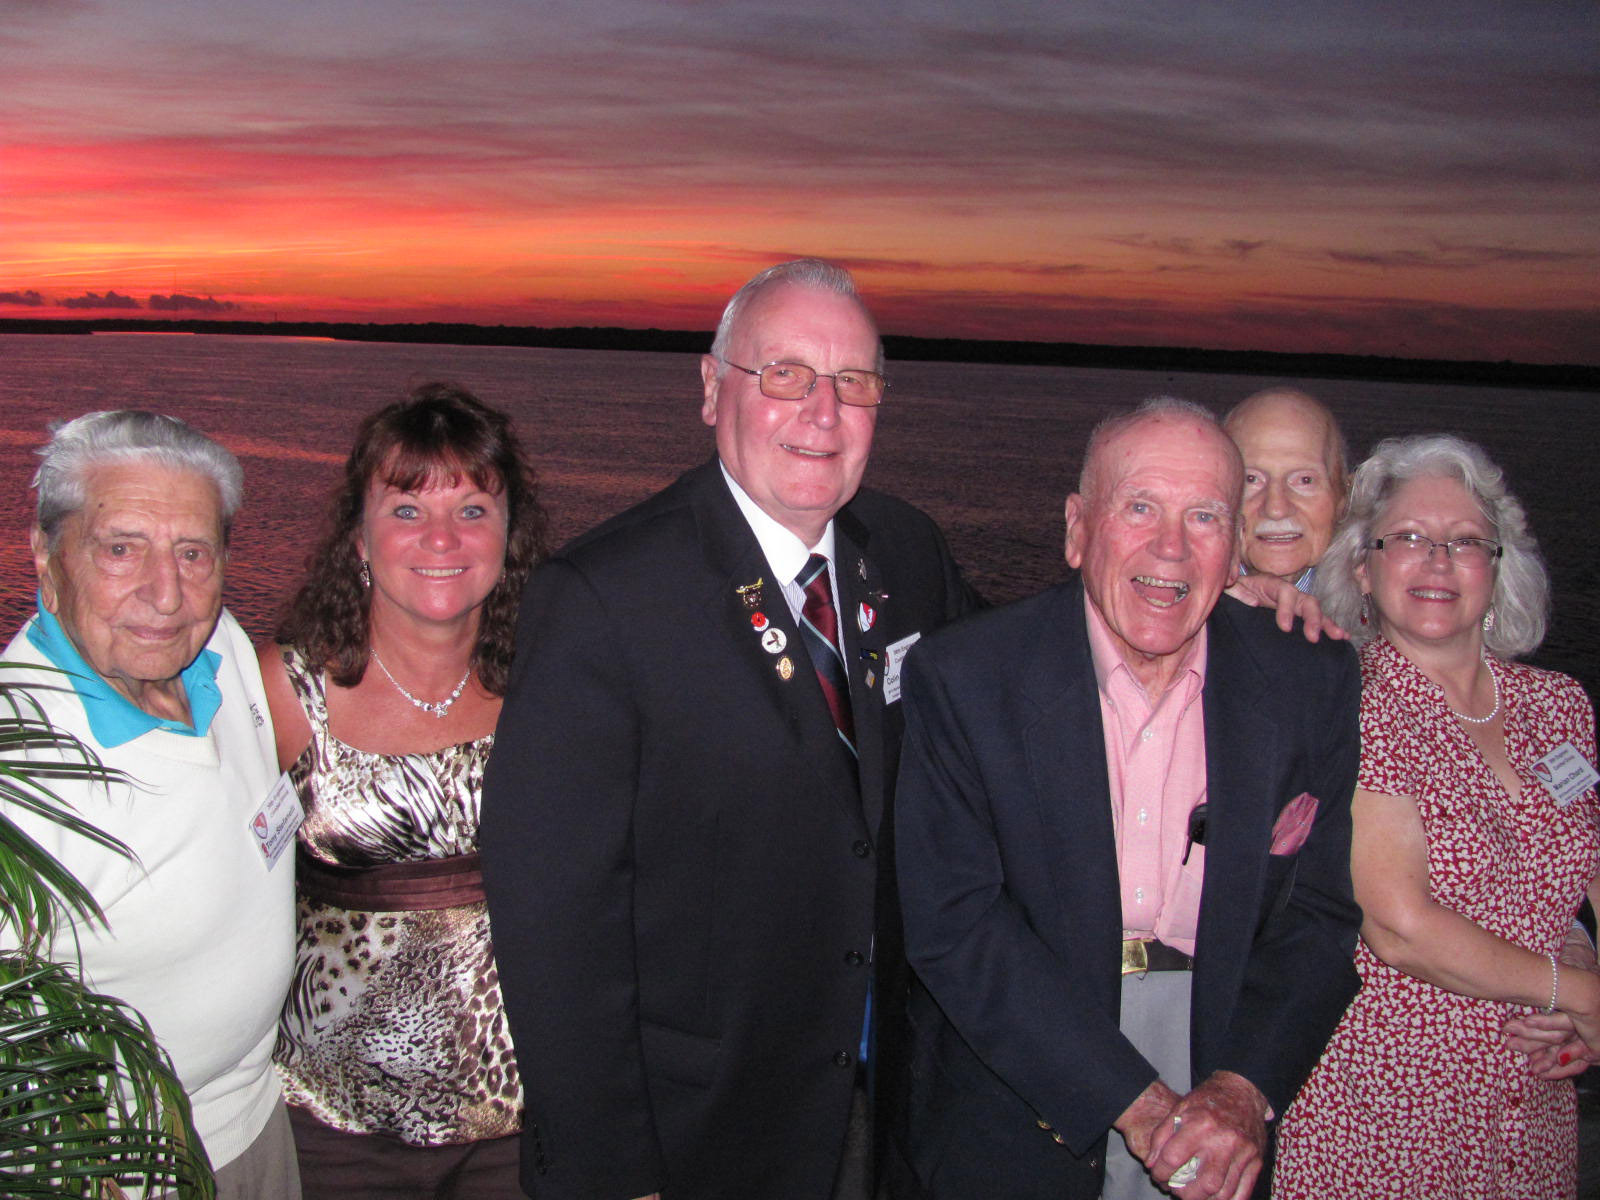 Tony, Margi, Colin, John, Carl and Marion at sunset 3